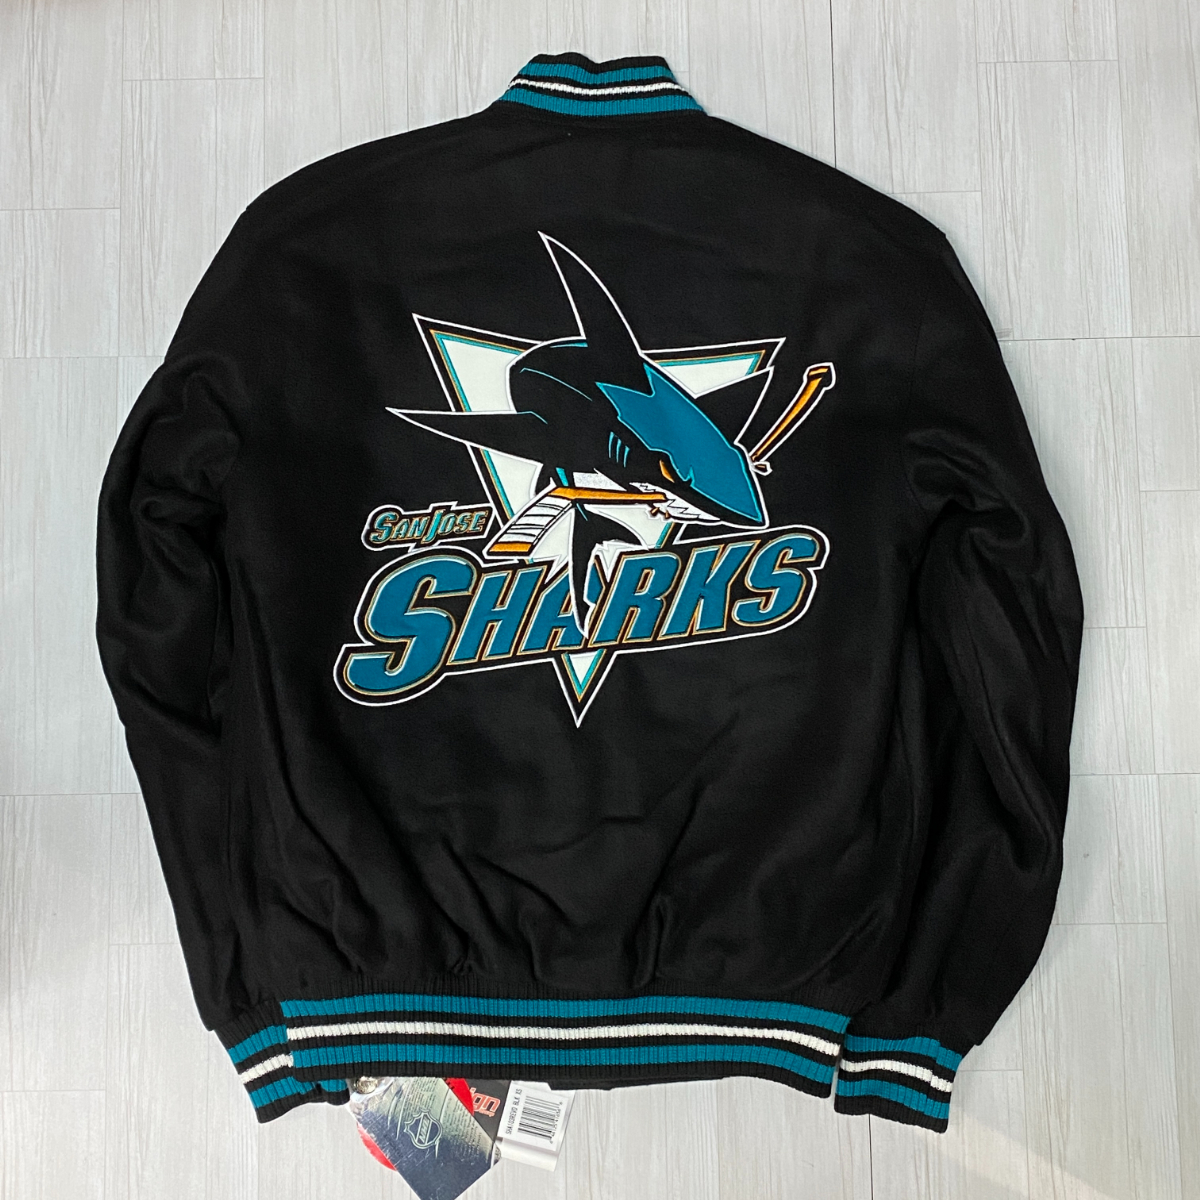 USA限定 【XS】 JHデザイン NHL サンノゼ シャークス San Jose Sharks リバーシブル スタジャン アイスホッケー 公式ライセンス商品